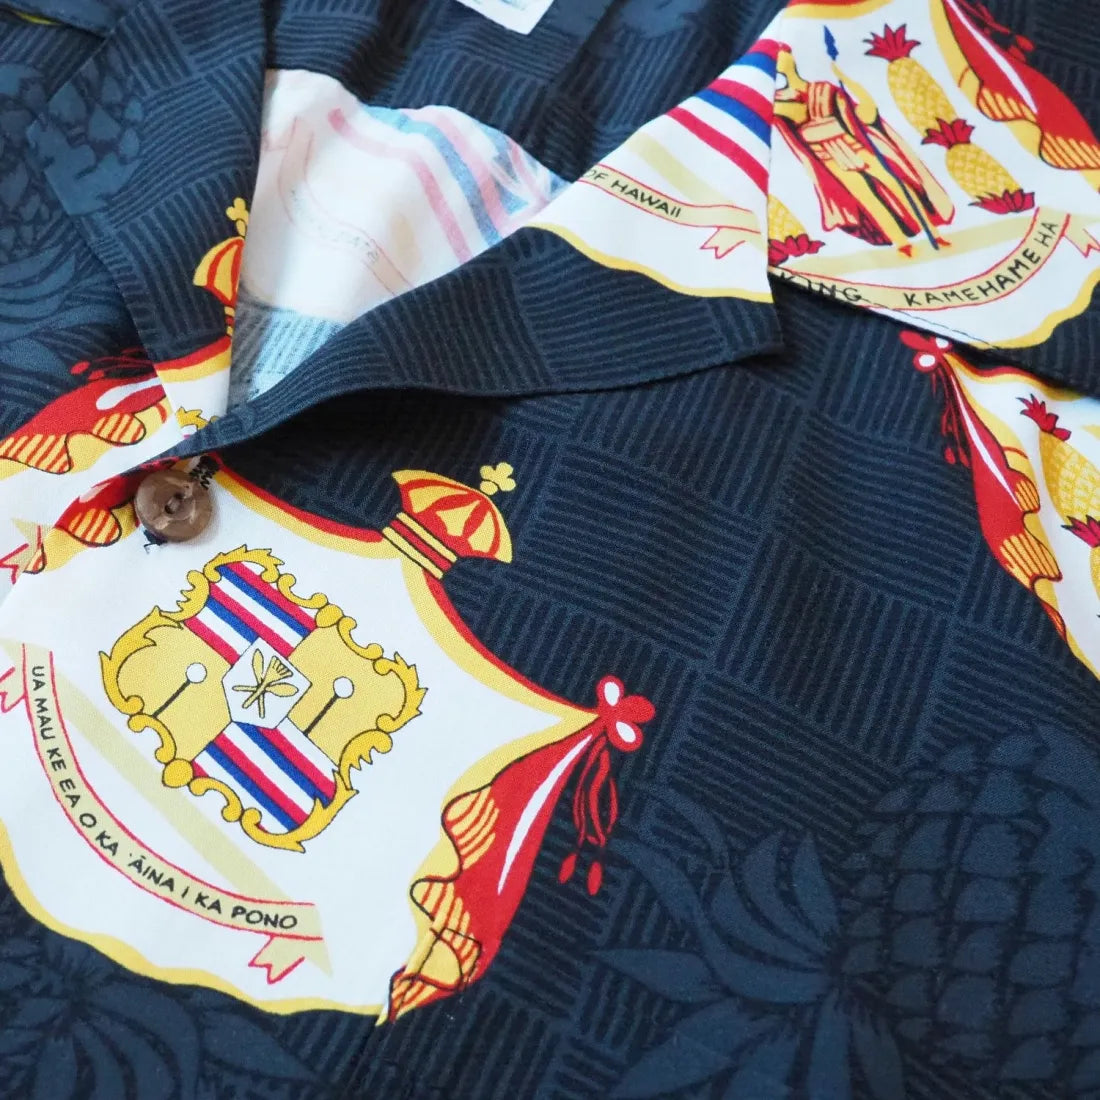 Hawaii Crest Black Hawaiian Rayon Shirt - Made